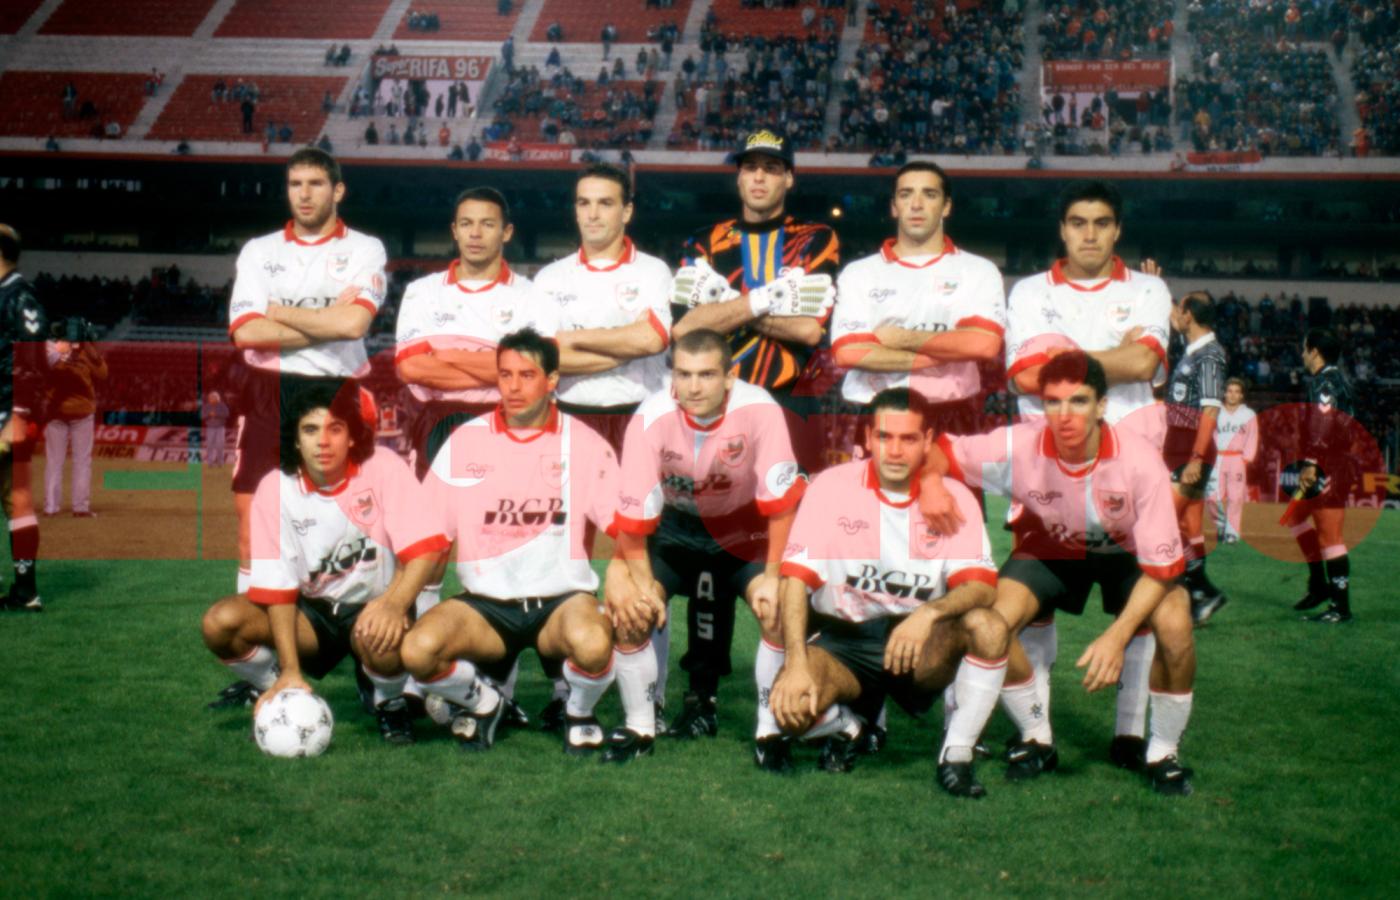 Imagen El plantel de Estudiantes en el Clausura 1996. Abajo a la derecha está Couceiro